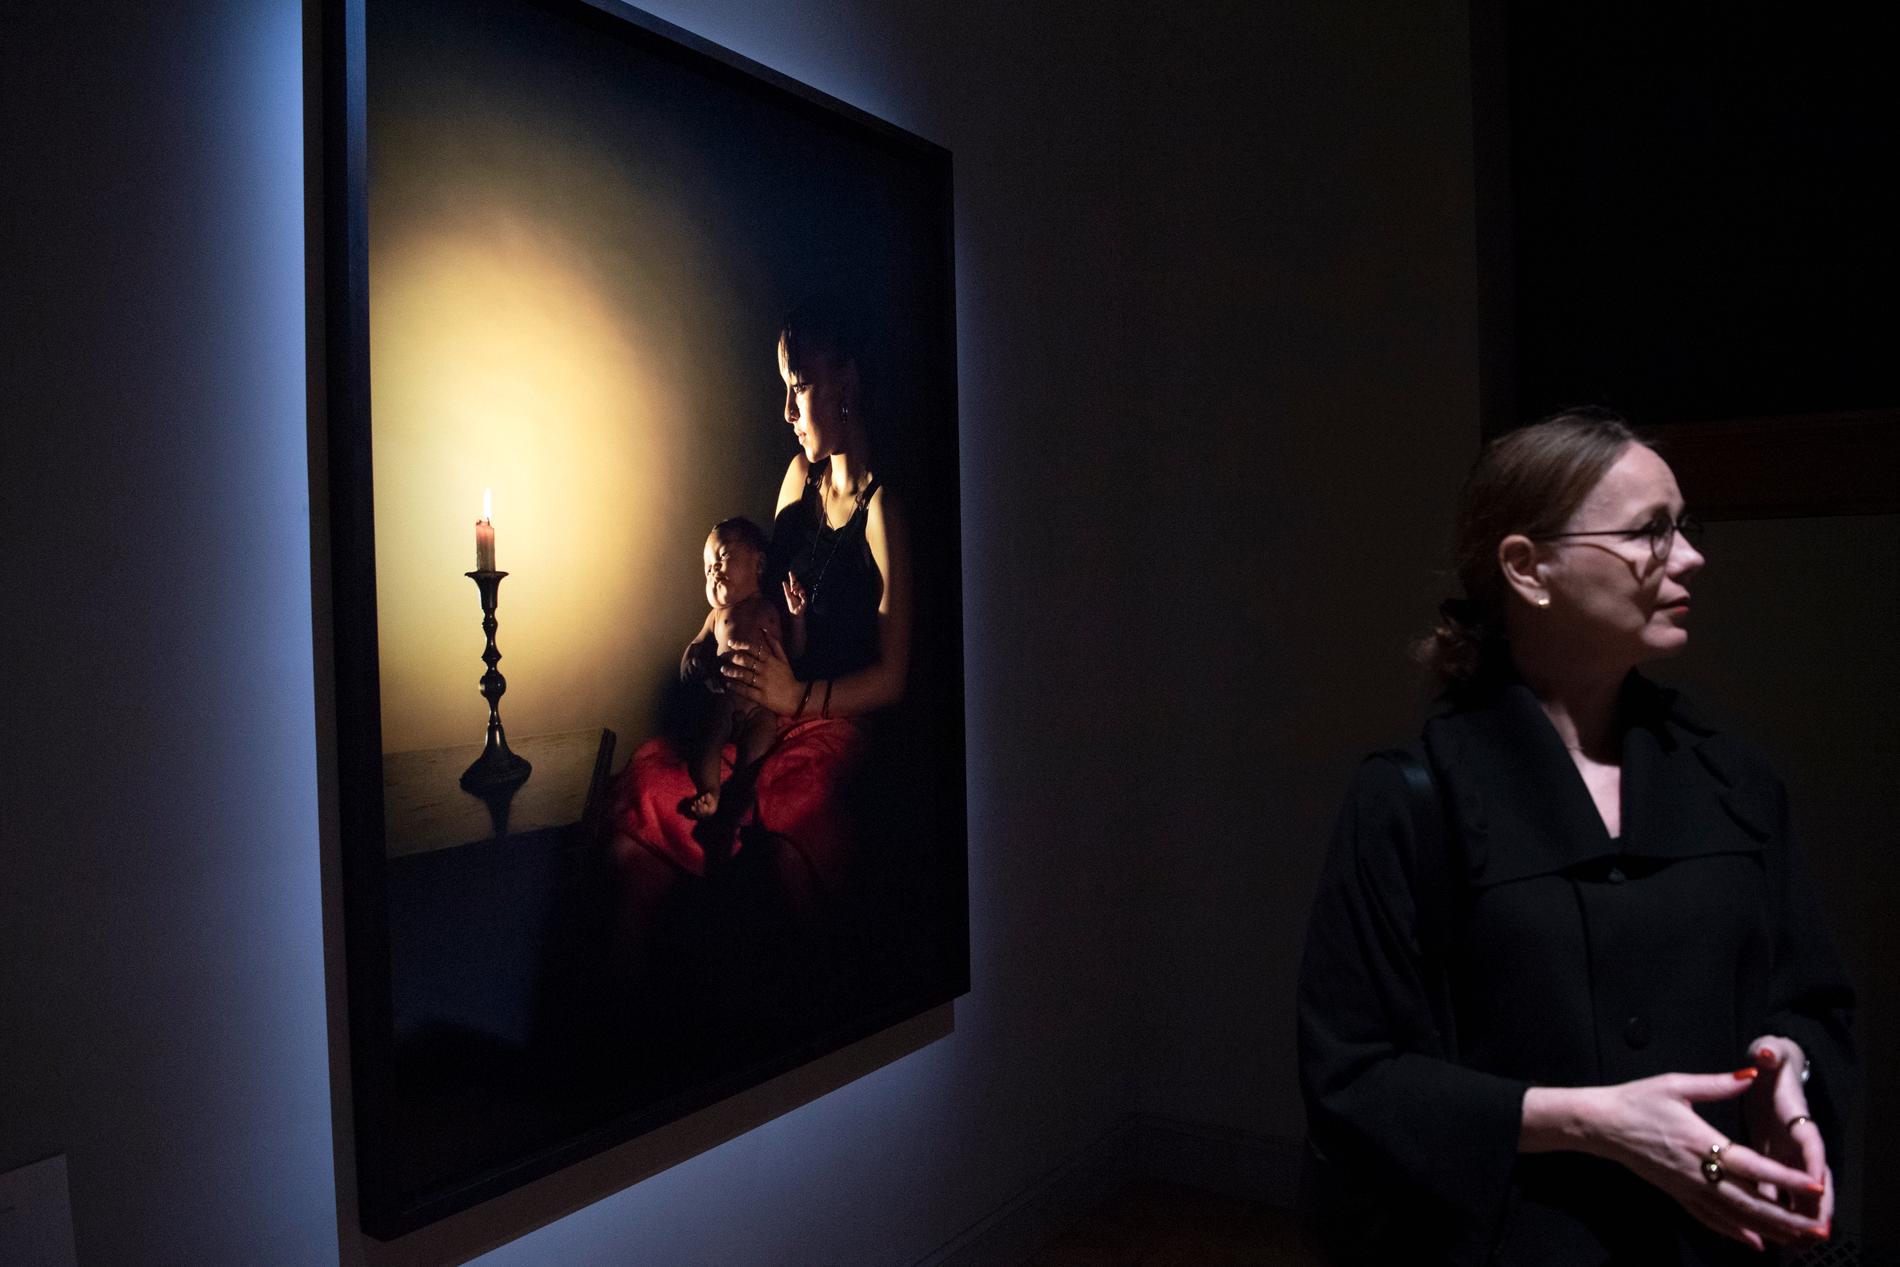 Mat Collishaws fotografi "Ensamma nätter, Annabelle" ingår i utställningen som Susanna Pettersson har kurerat tillsammans med sin brittiske kollega James Putnam.